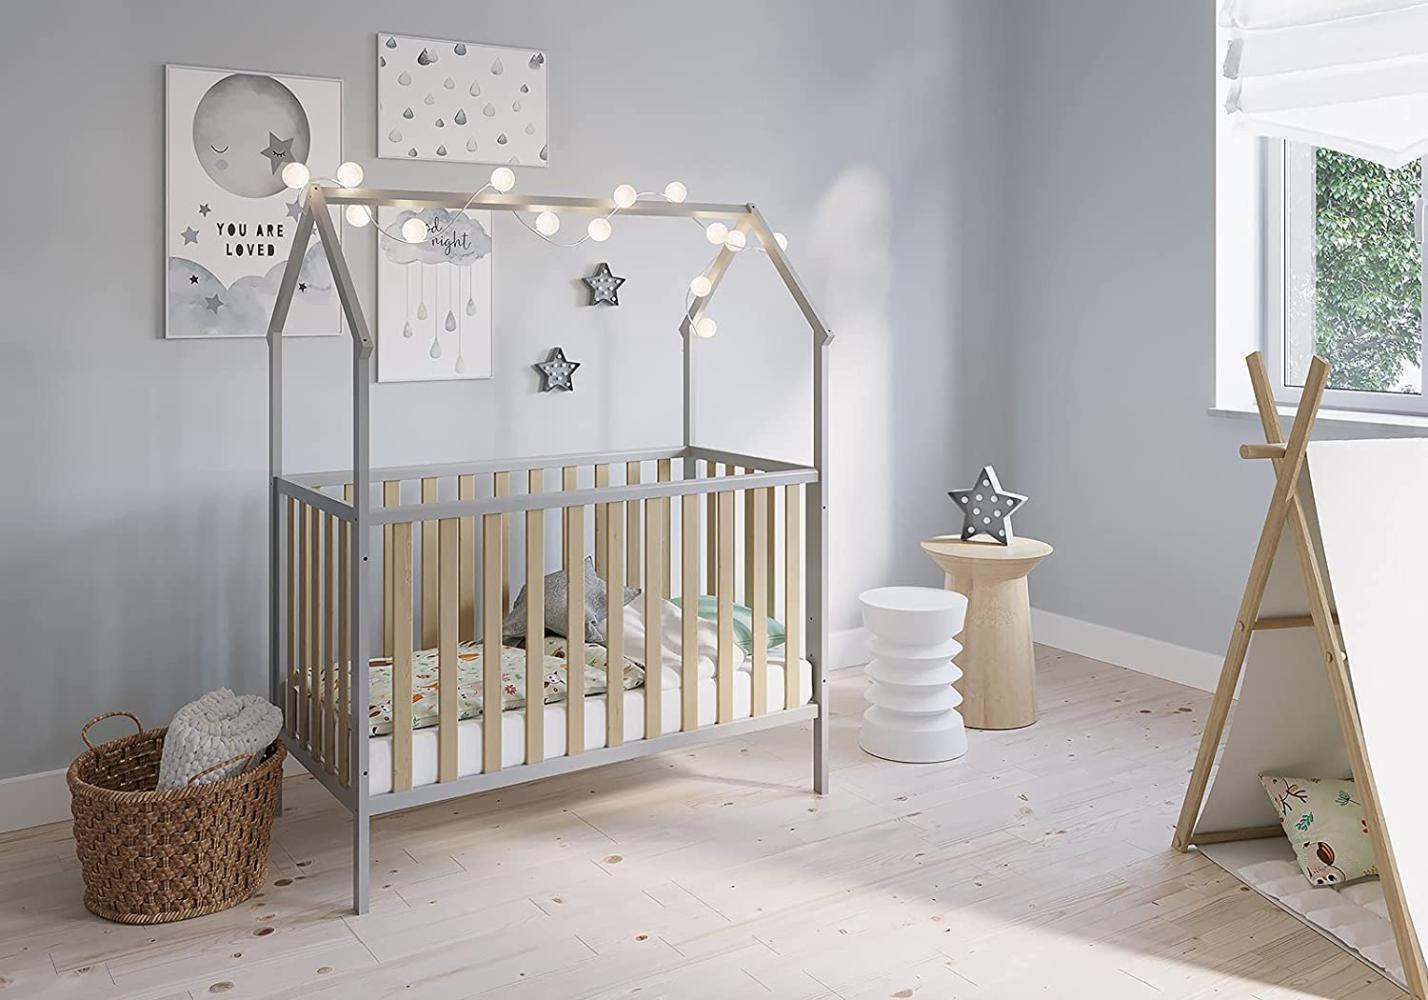 FabiMax 'Schlafmütze' Kinderbett, 60 x 120 cm, grau/natur, mit Matratze Comfort, Kiefer massiv, 3-fach höhenverstellbar, umbaubar Bild 1